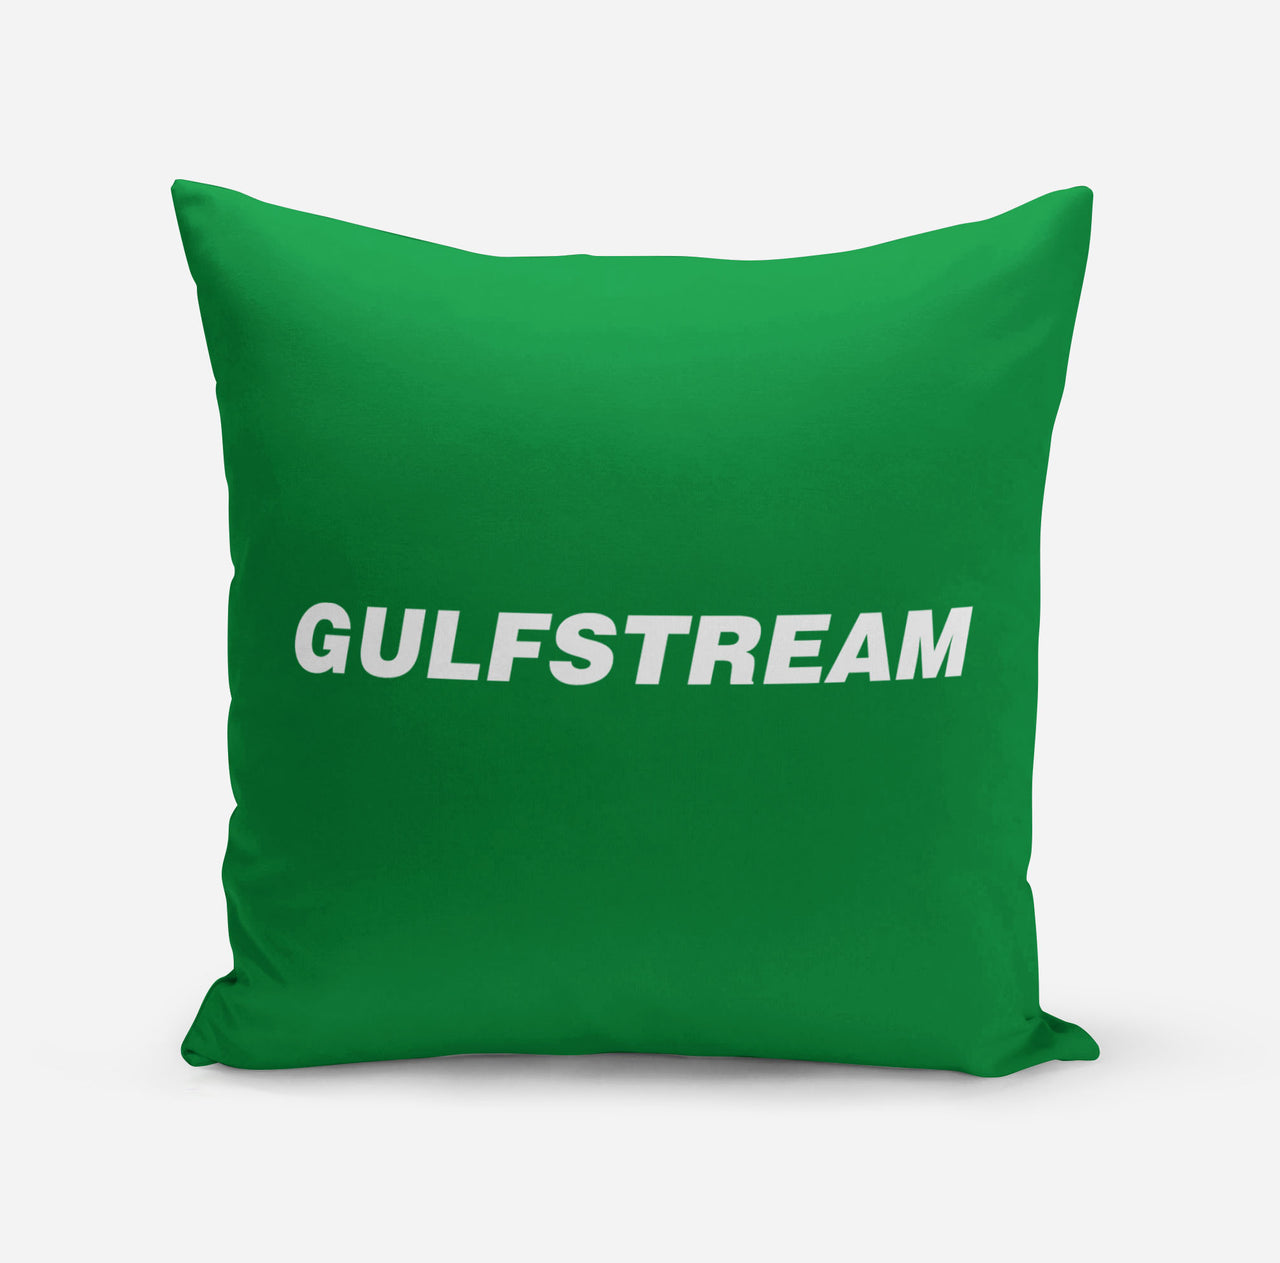 Gulfstream & Text Designed Pillows